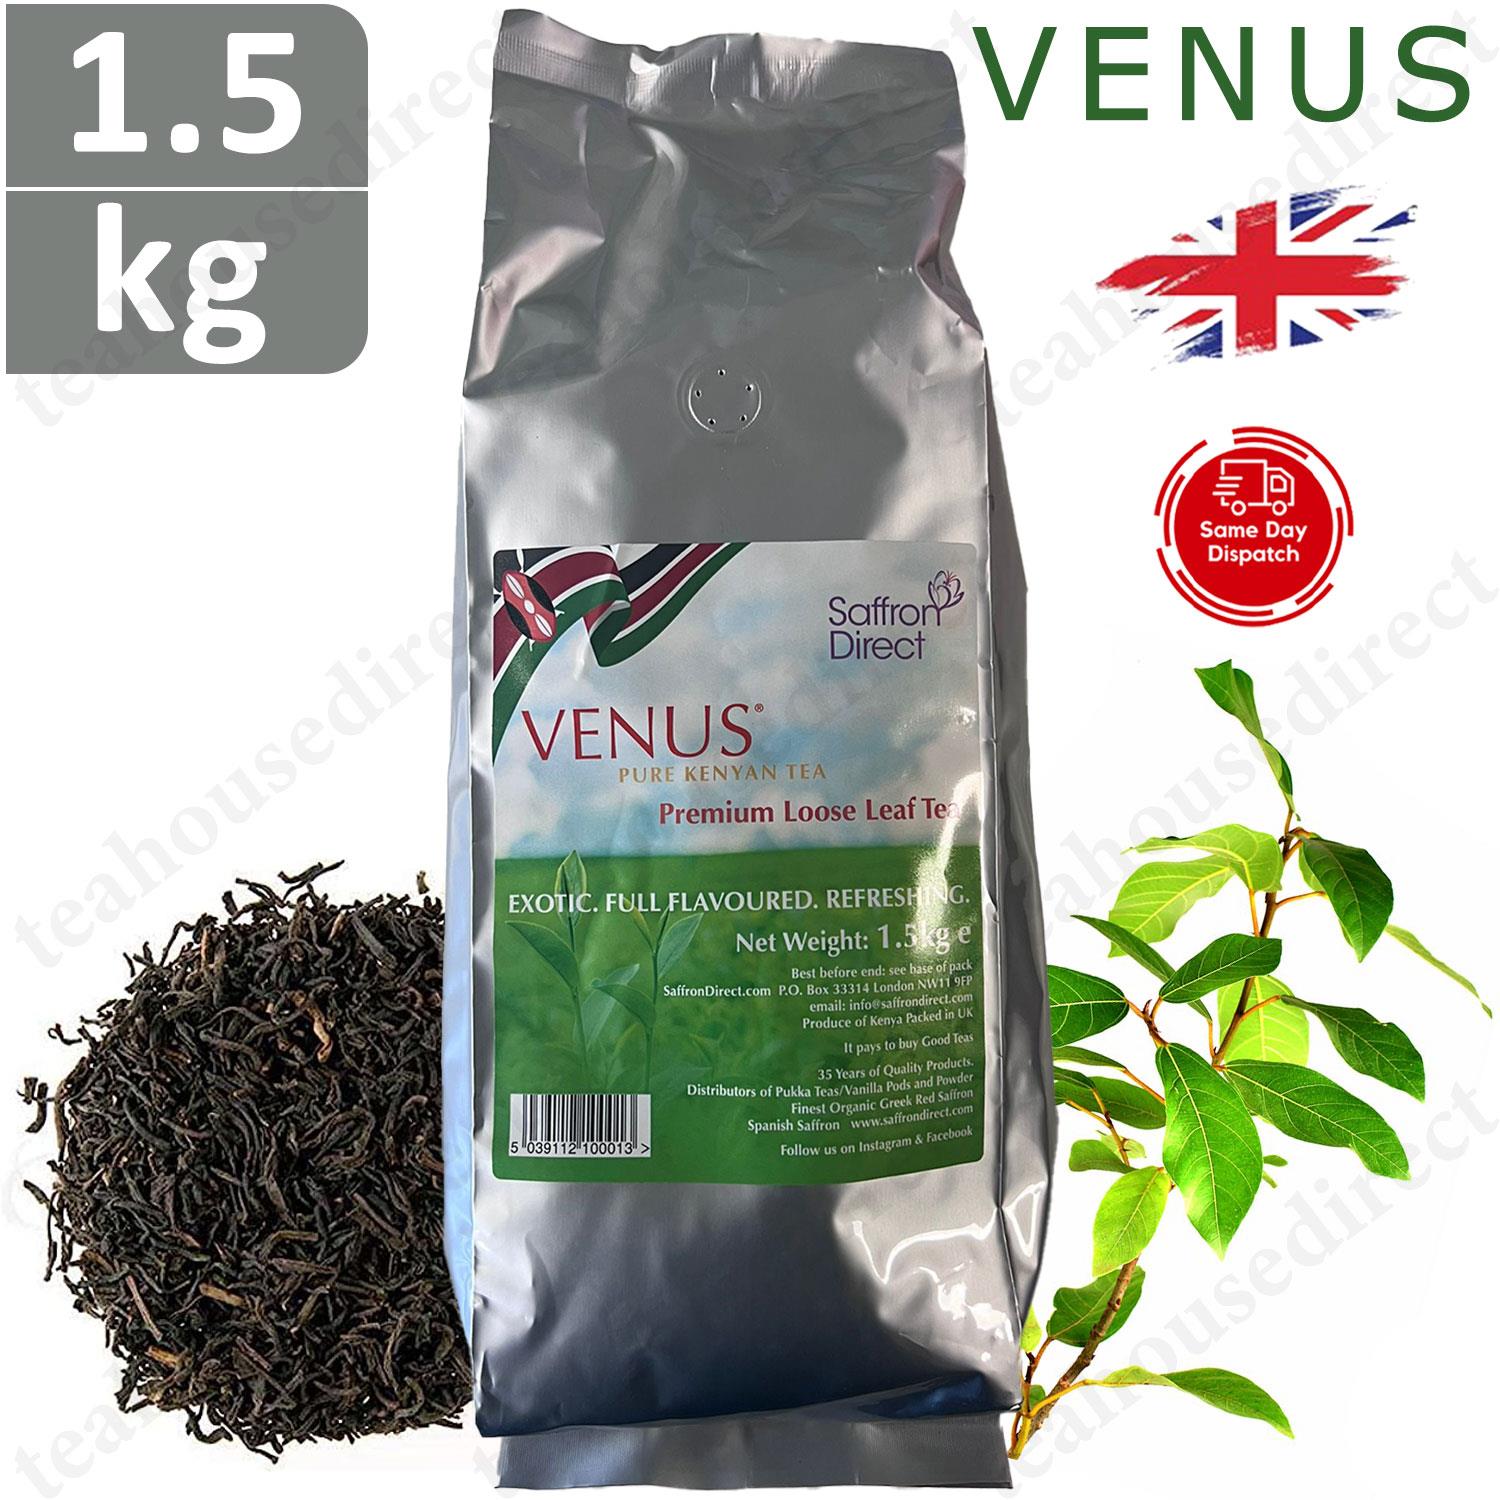 Venus Tea